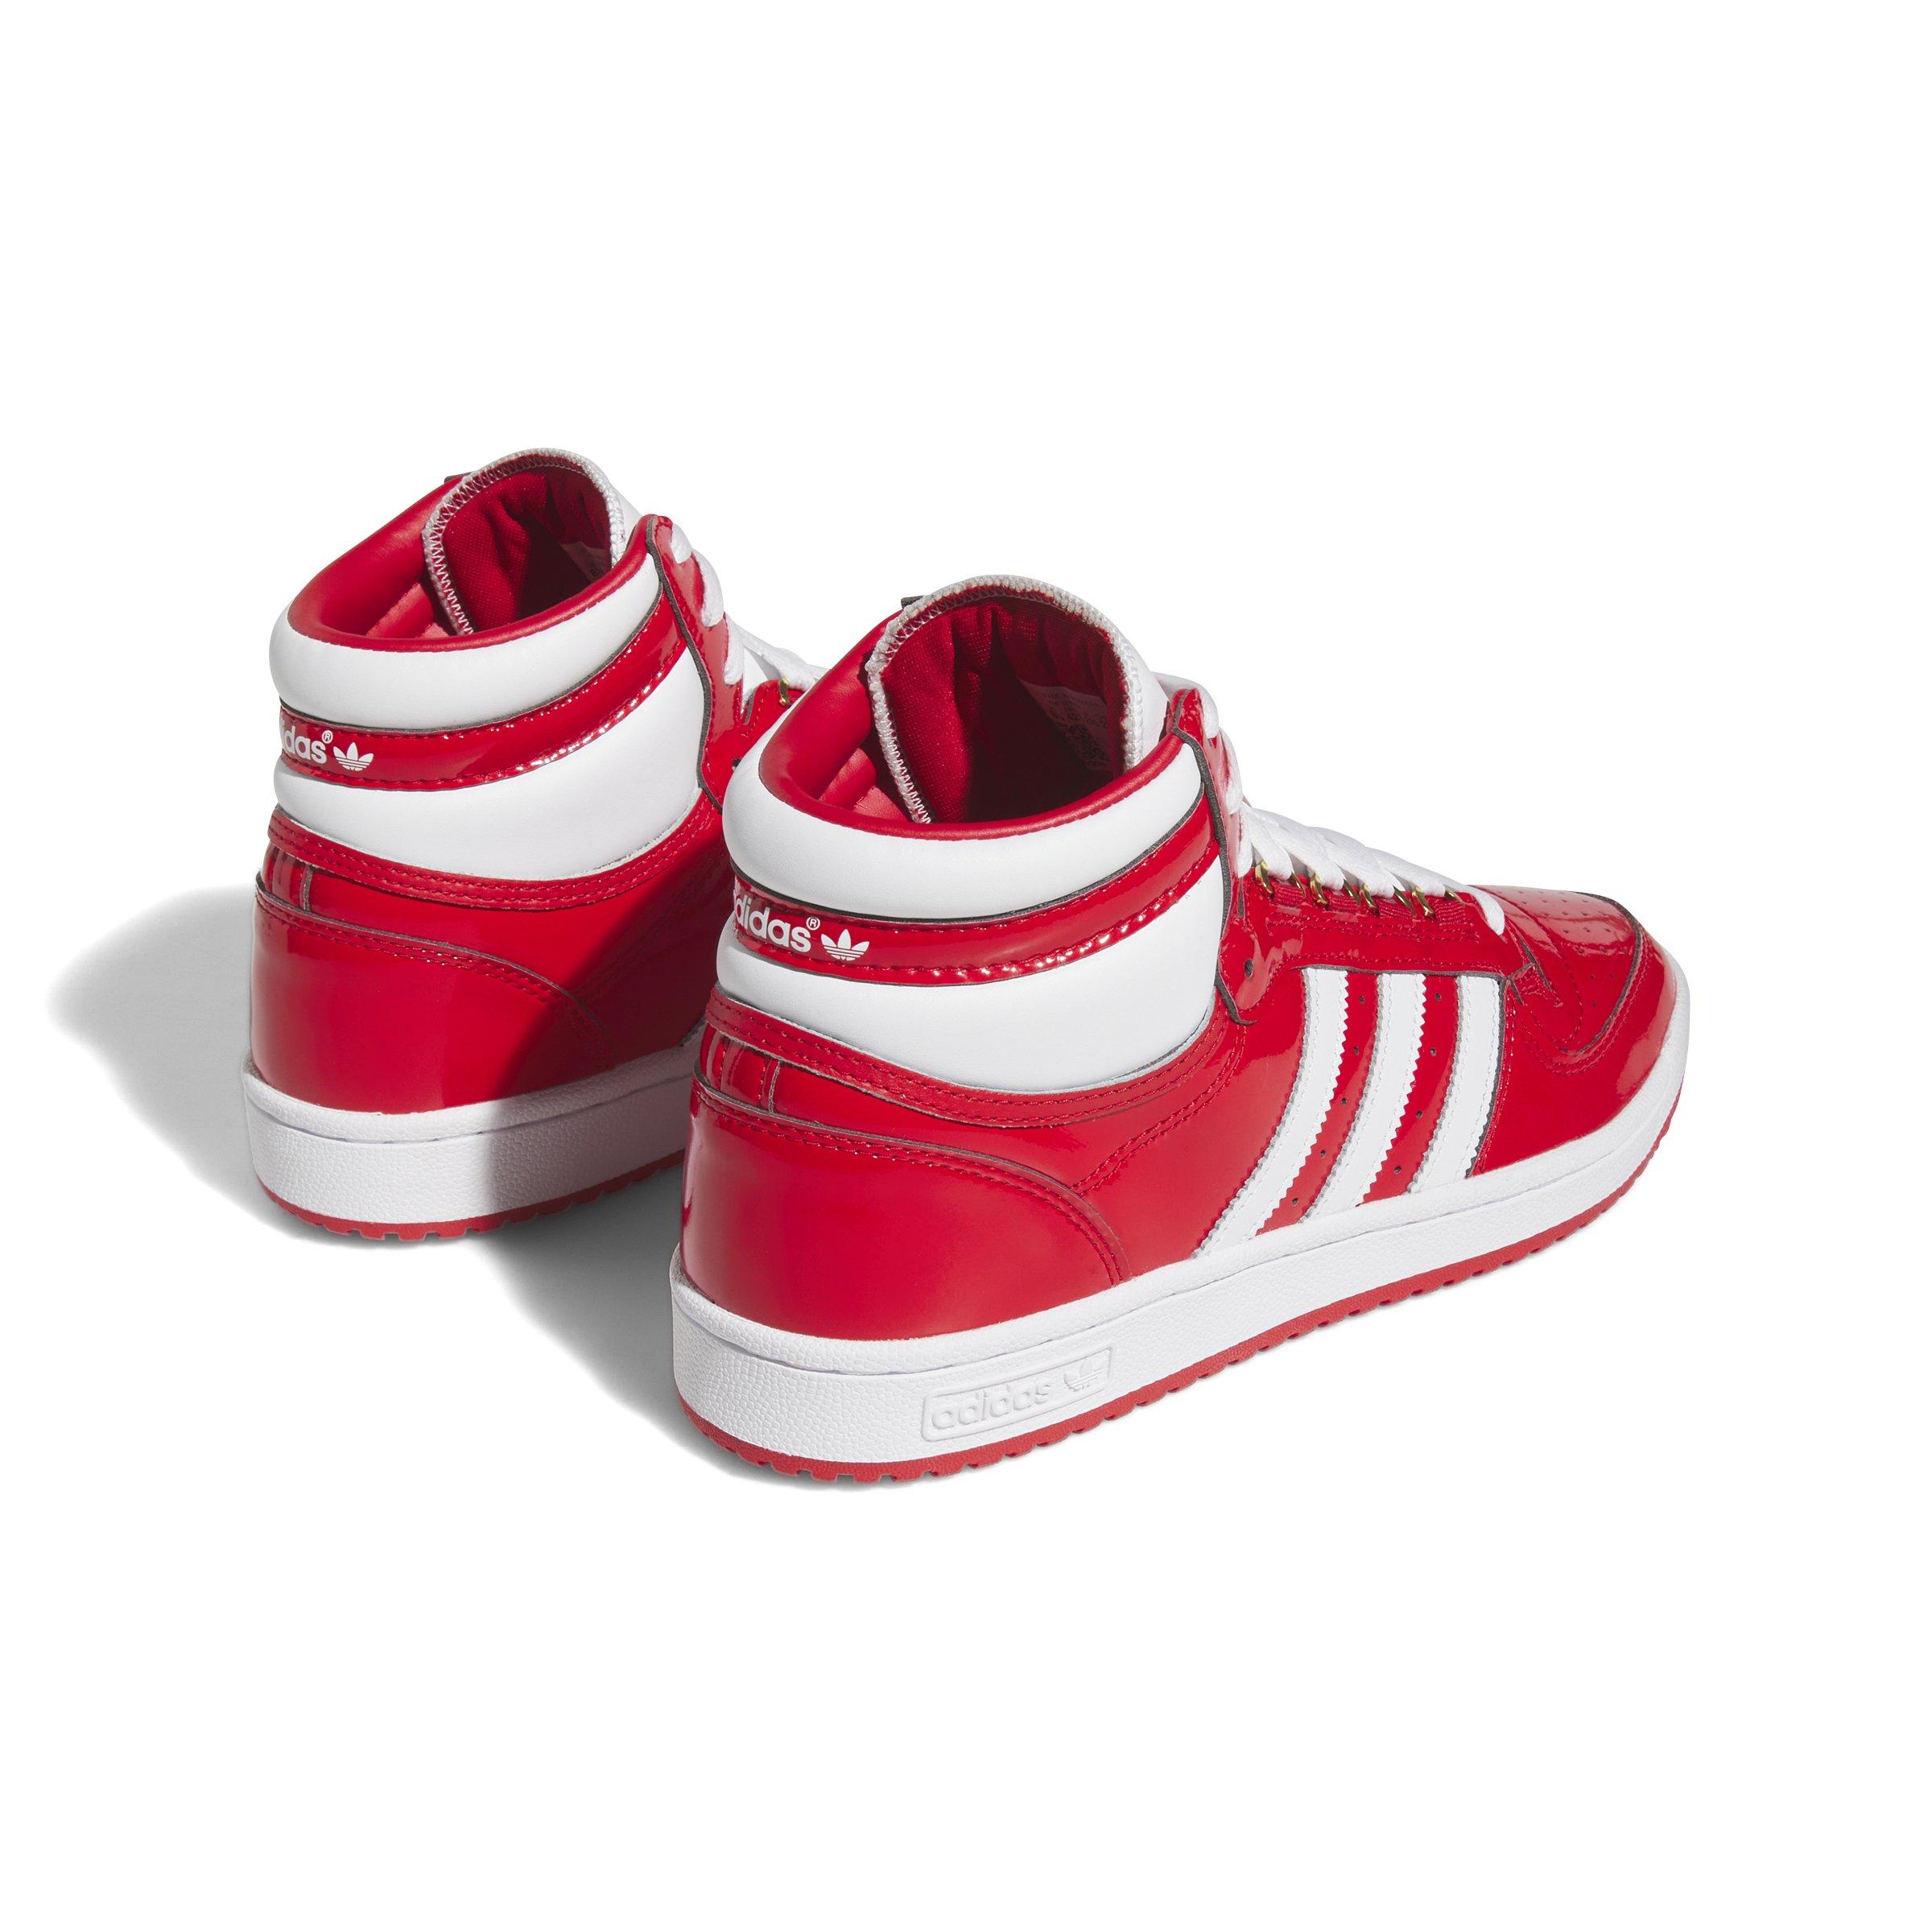 adidas Top Ten Hi Patent "Red/White Shoe